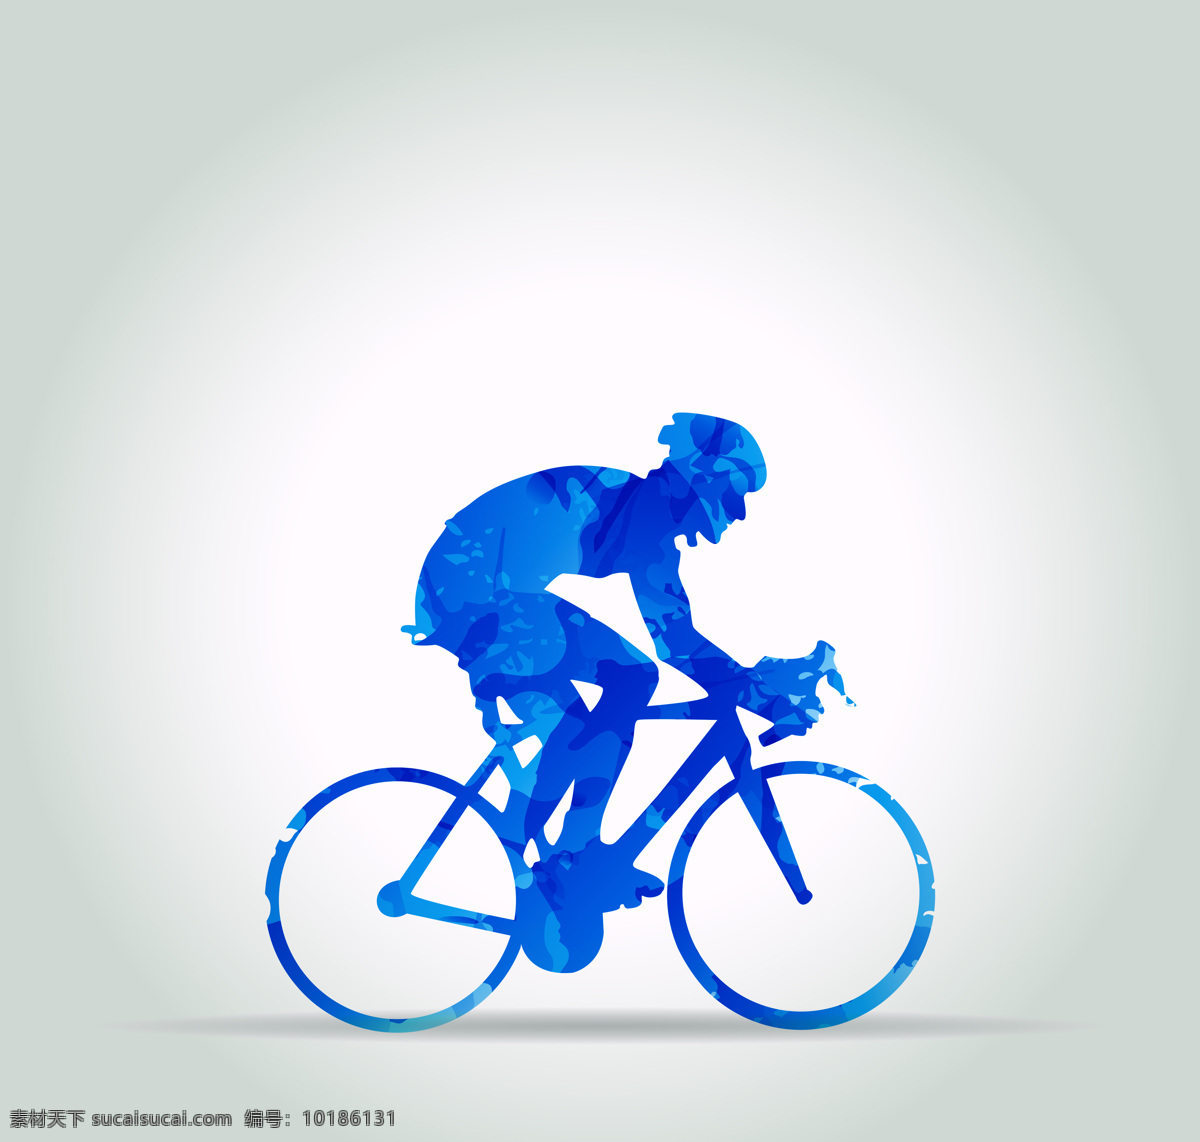 骑自行车的人 自行车 运动 剪影 蓝色 卡通画 设计之家